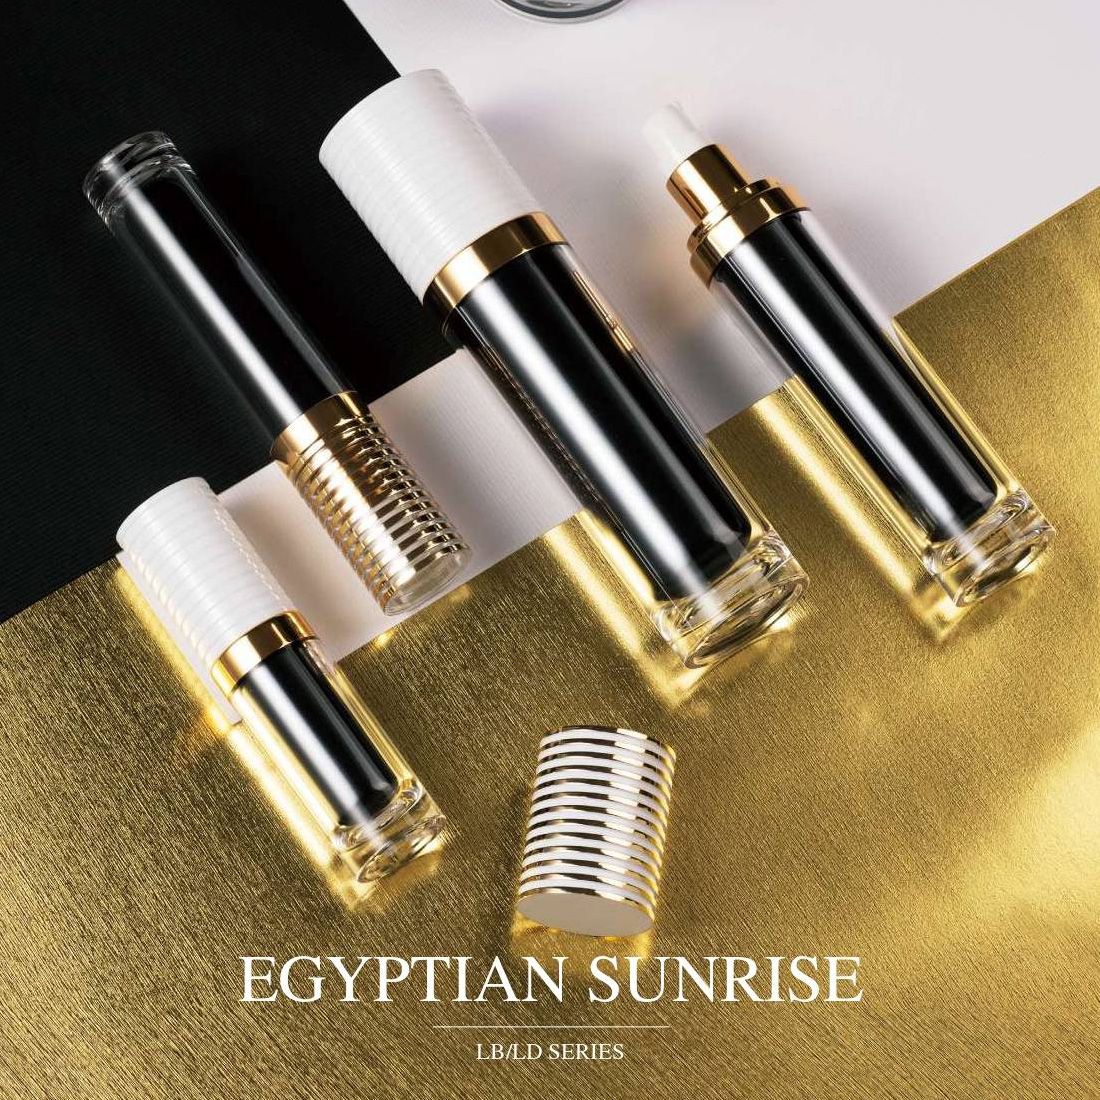 تصميم حاوية COSJAR Cometic - سلسلة شروق الشمس المصرية